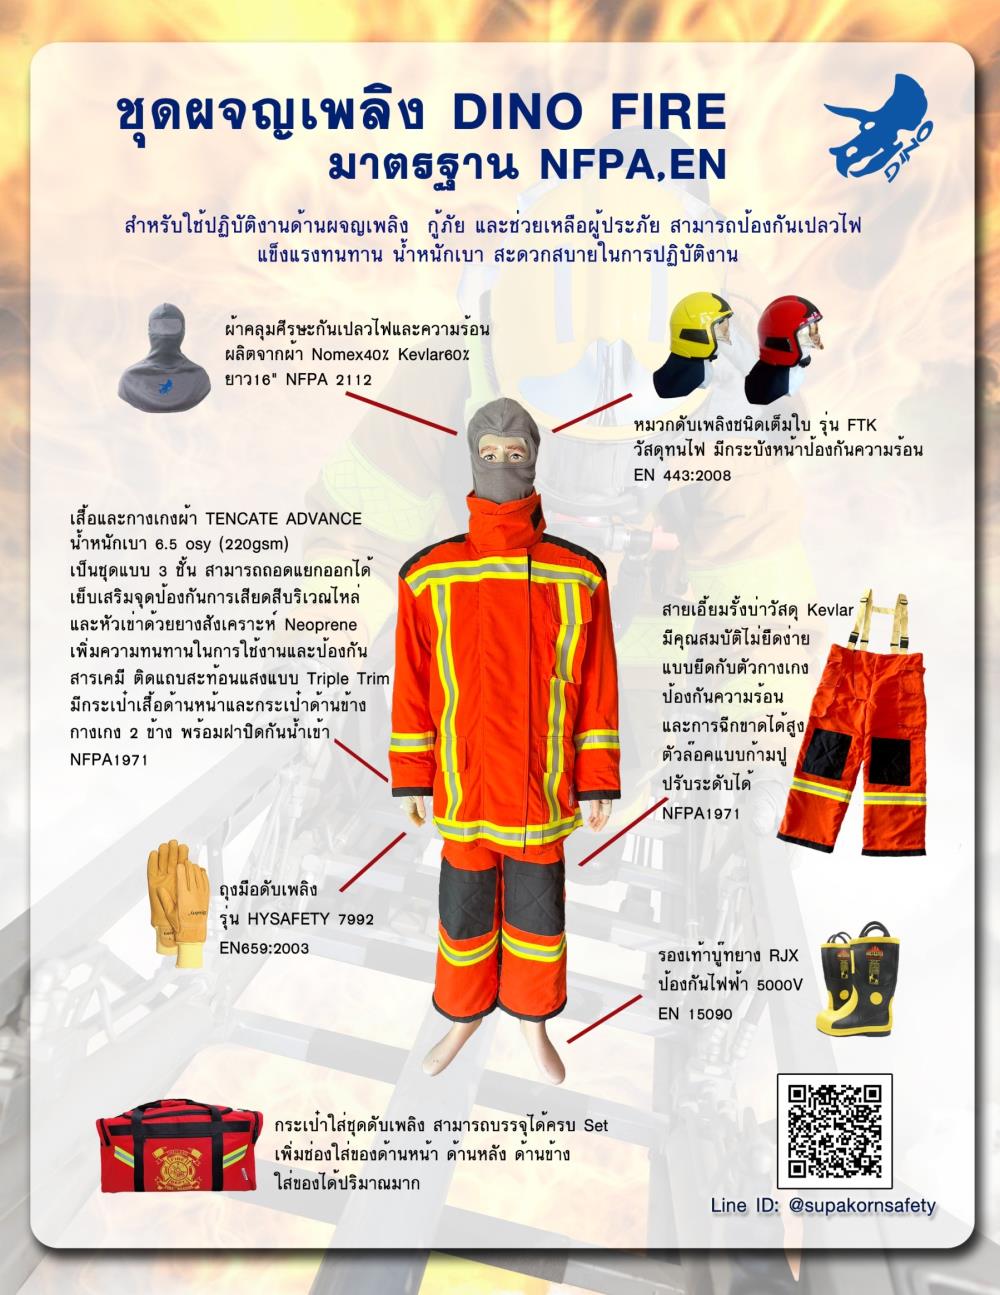 ชุดผจญเพลิง,ชุดผจญเพลิง,DINO,Plant and Facility Equipment/Safety Equipment/Fire Safety